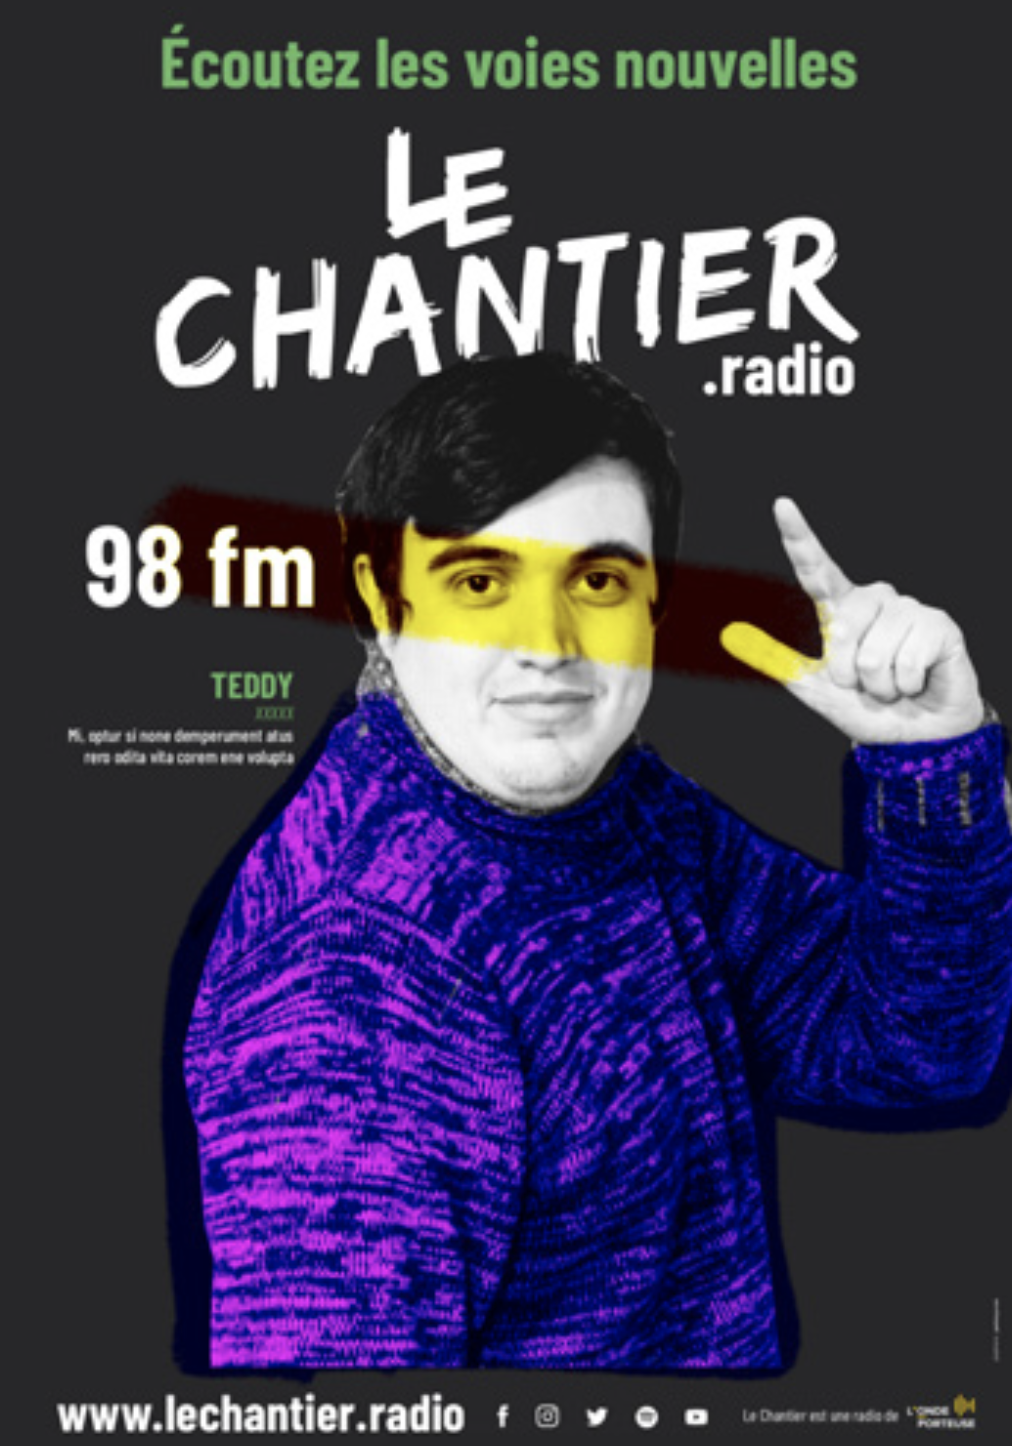 Le Chantier : une nouvelle radio à Clermont-Ferrand